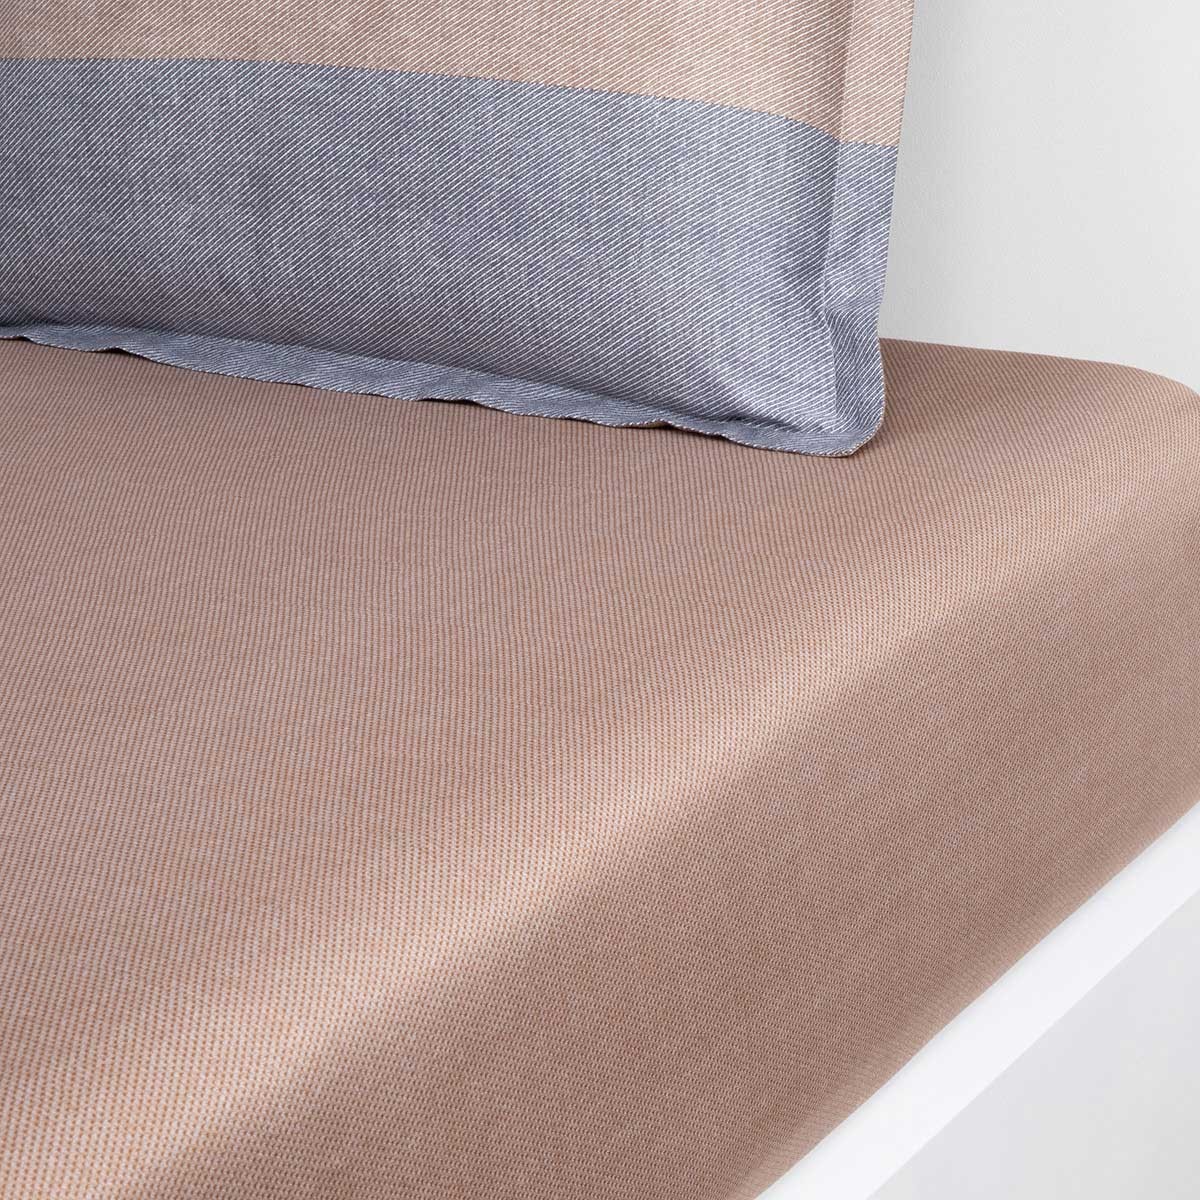 Parure de lit BOSS Home ICONIC STRIPE Beige en 90 fils - Bed Linen  Collections haut de gamme